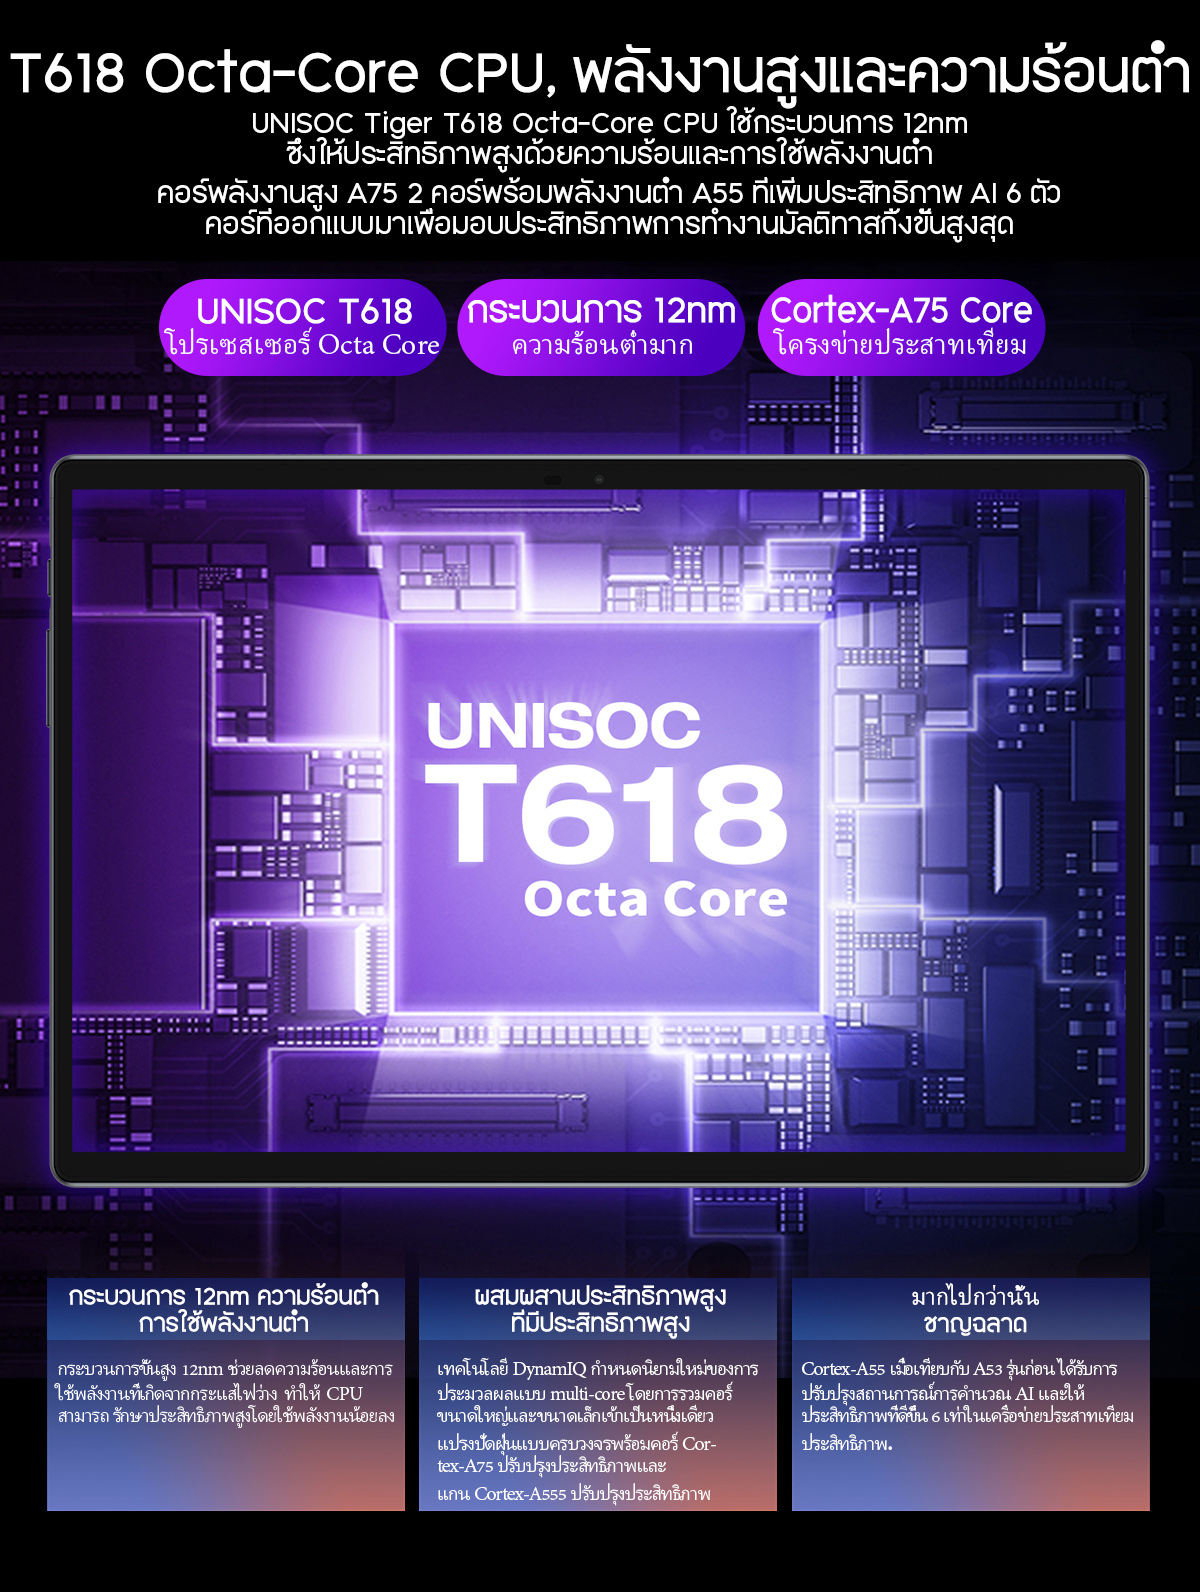 ข้อมูลประกอบของ TECLAST M40Pro แท็บเล็ต 10.1 นิ้ว 1920*1200 หน้าจอ IPS Android11 CPU T618 octa-core 6GB/128GB แบตเตอรี่ขนาดใหญ่สุด 7000mAh ลำโพงสเตอริโอสี่ตัว เกม ความบันเทิง การเรียนรู้